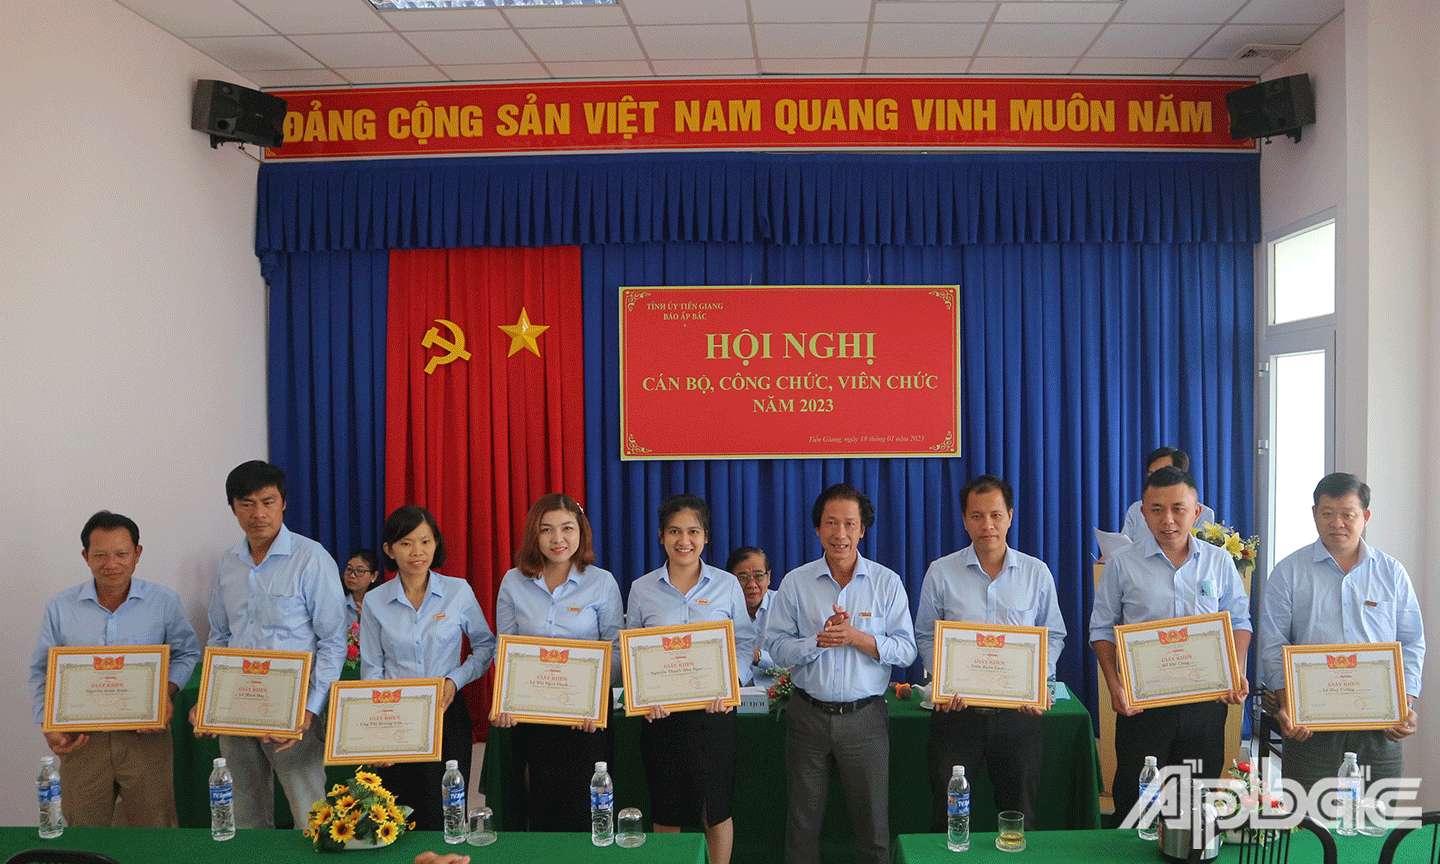 Đồng chí Phạm Văn Sơn, Phó Tổng Biên tập, Chủ tịch Công đoàn cơ sở Báo Ấp Bắc trao Giấy khen cho các cá nhân đạt danh hiệu 